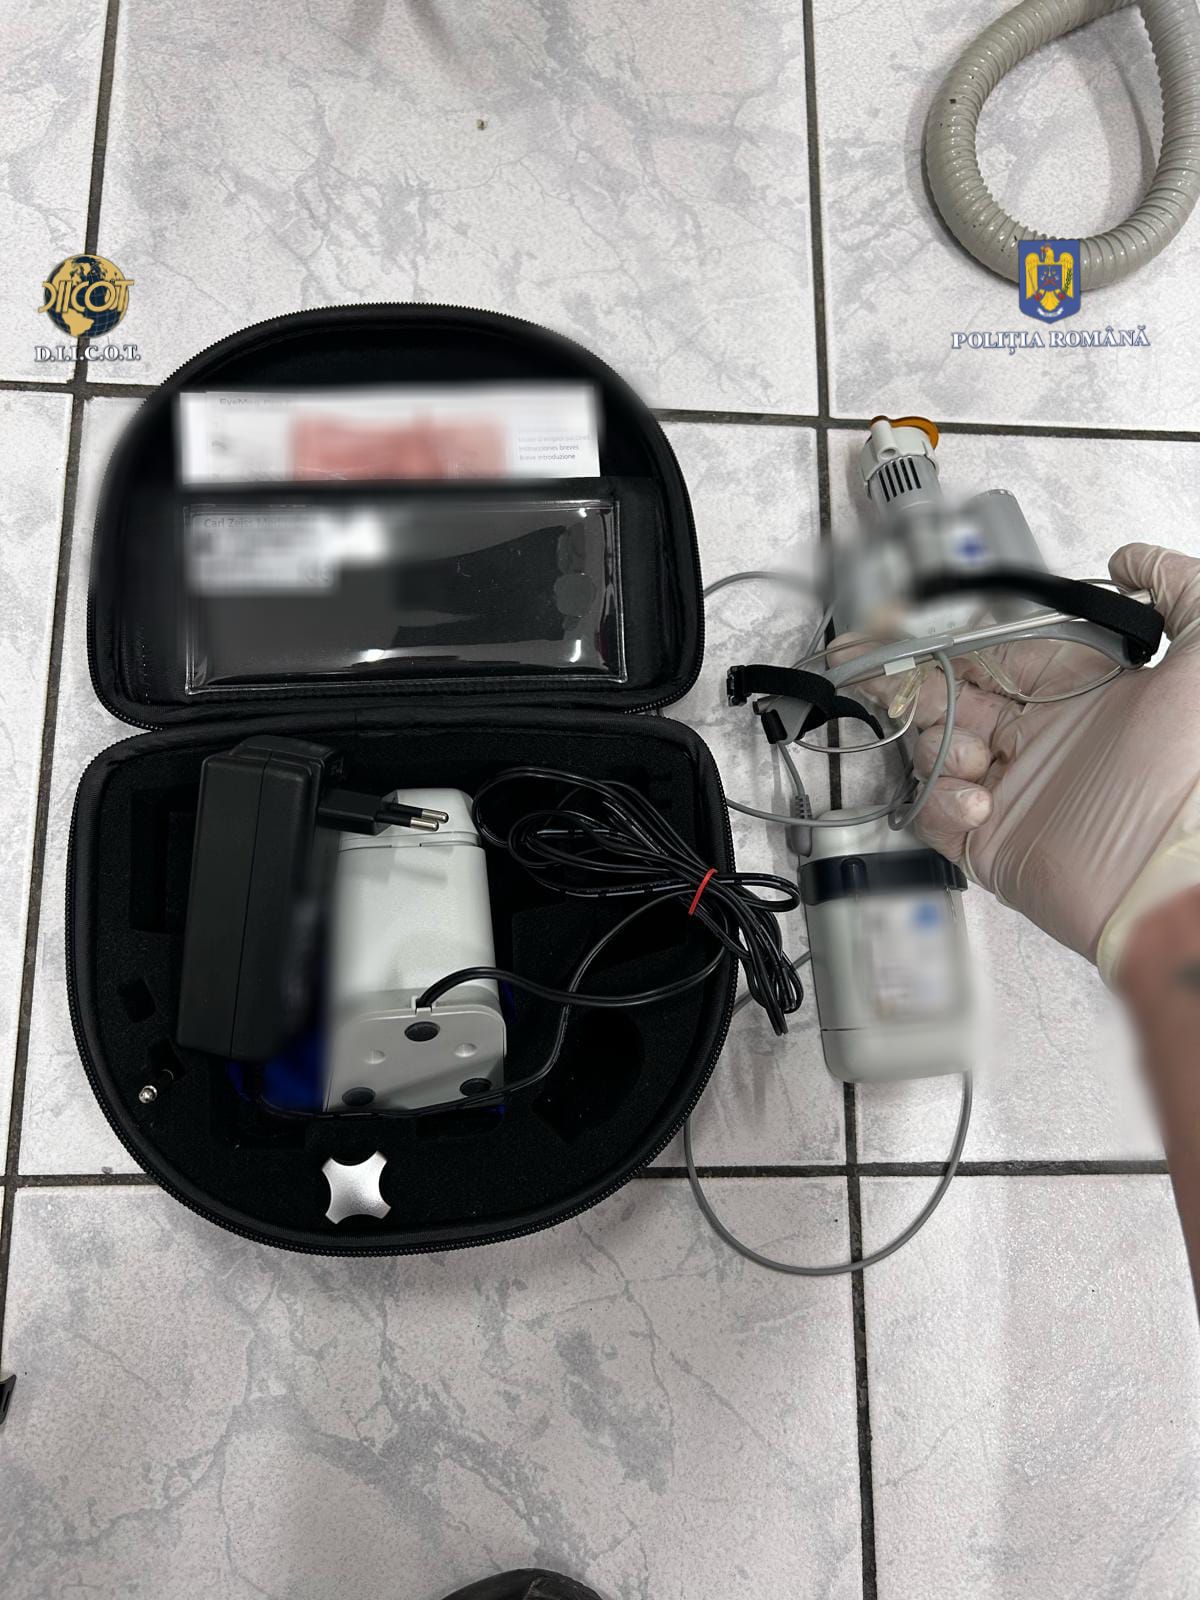 Percheziții în Maramureș la hoții de aparatură medicală stomatologică din Nancy, FRANȚA